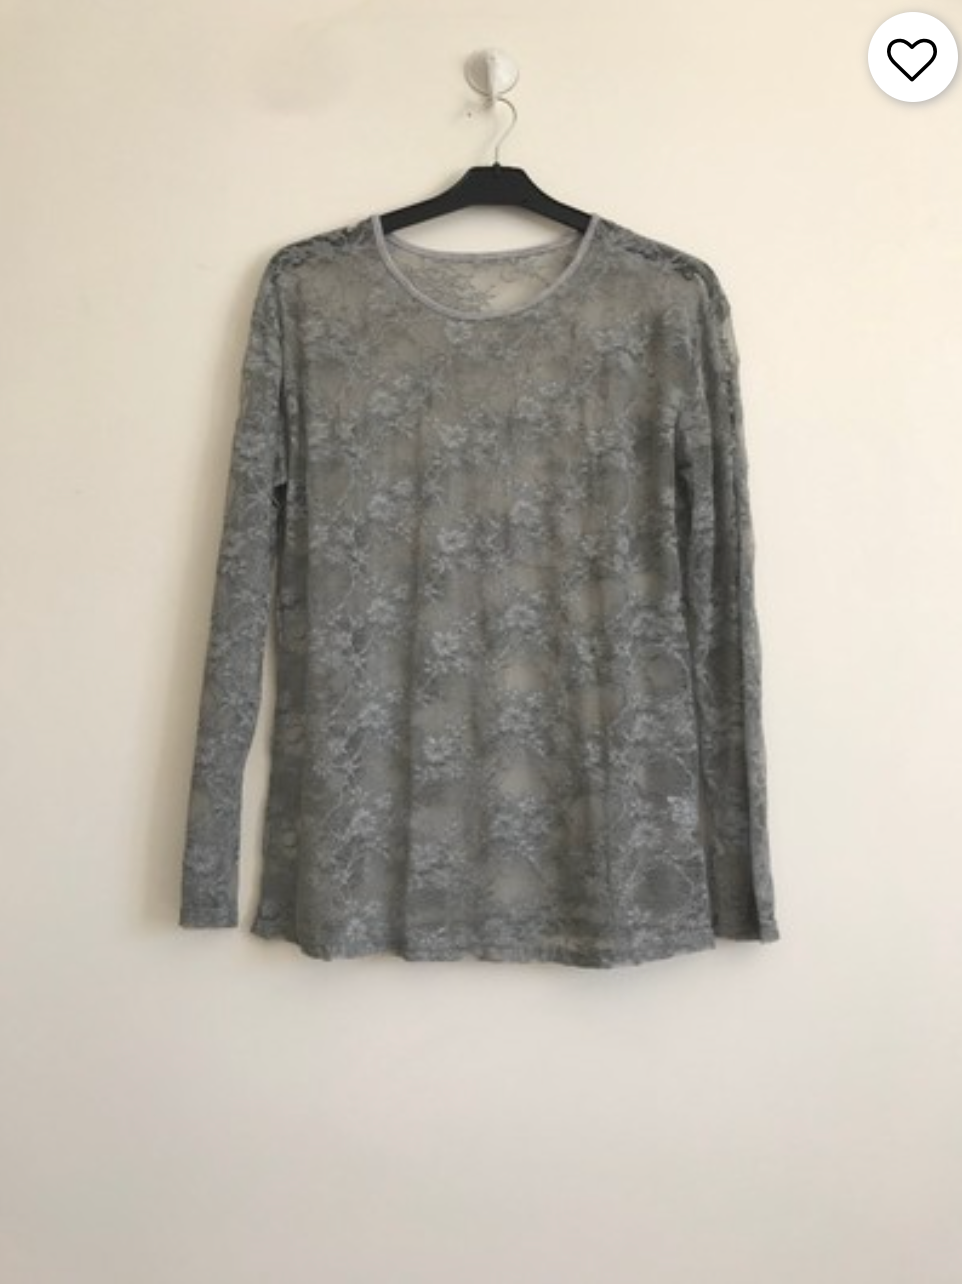 Lace mesh blouse